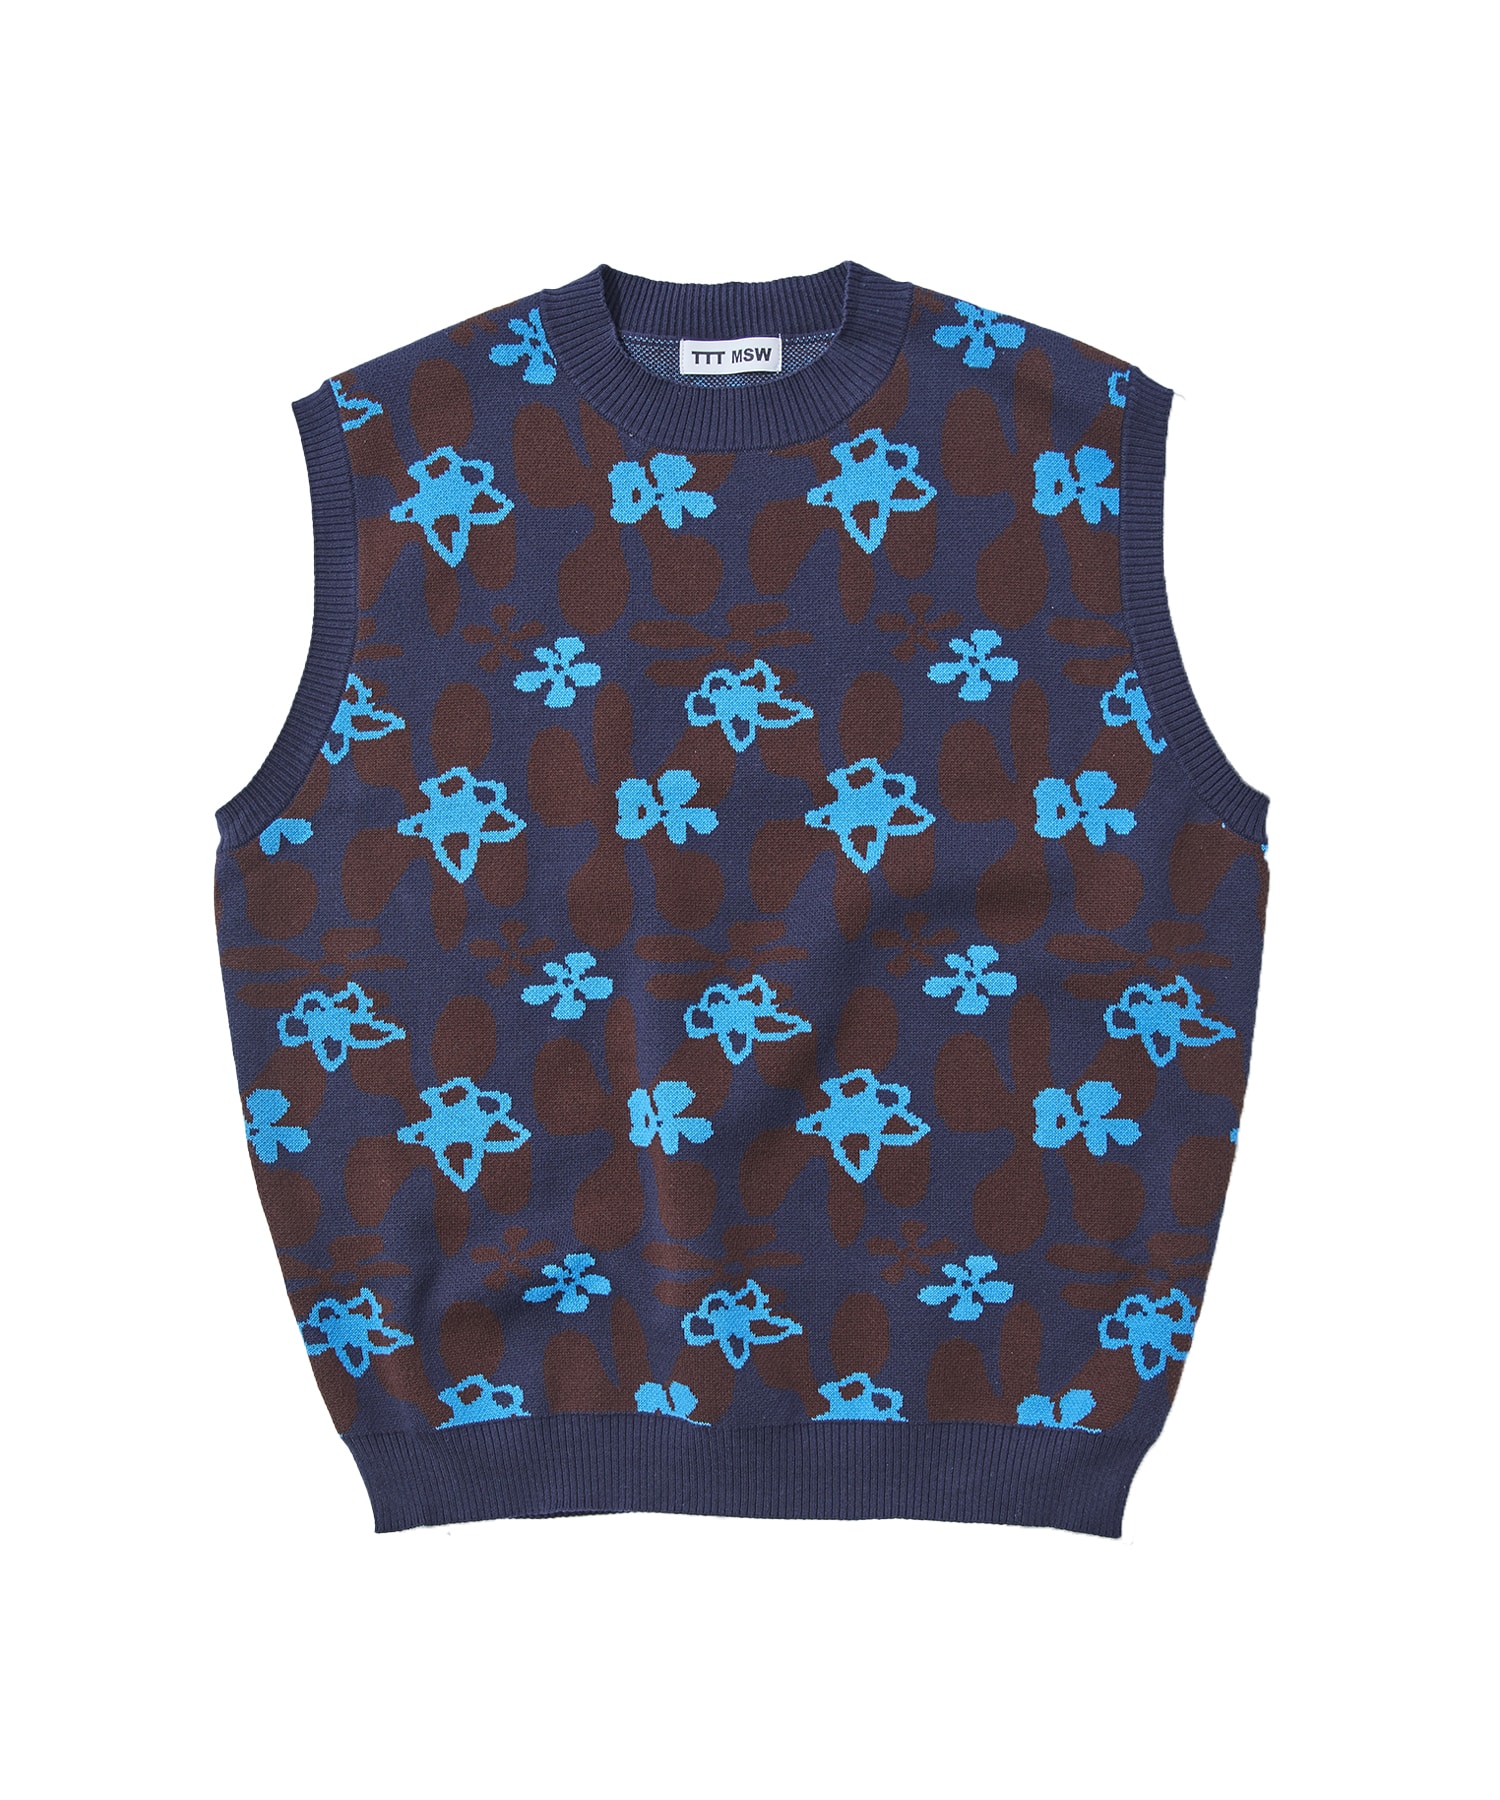 Flower camo knit vest | TTT MSW